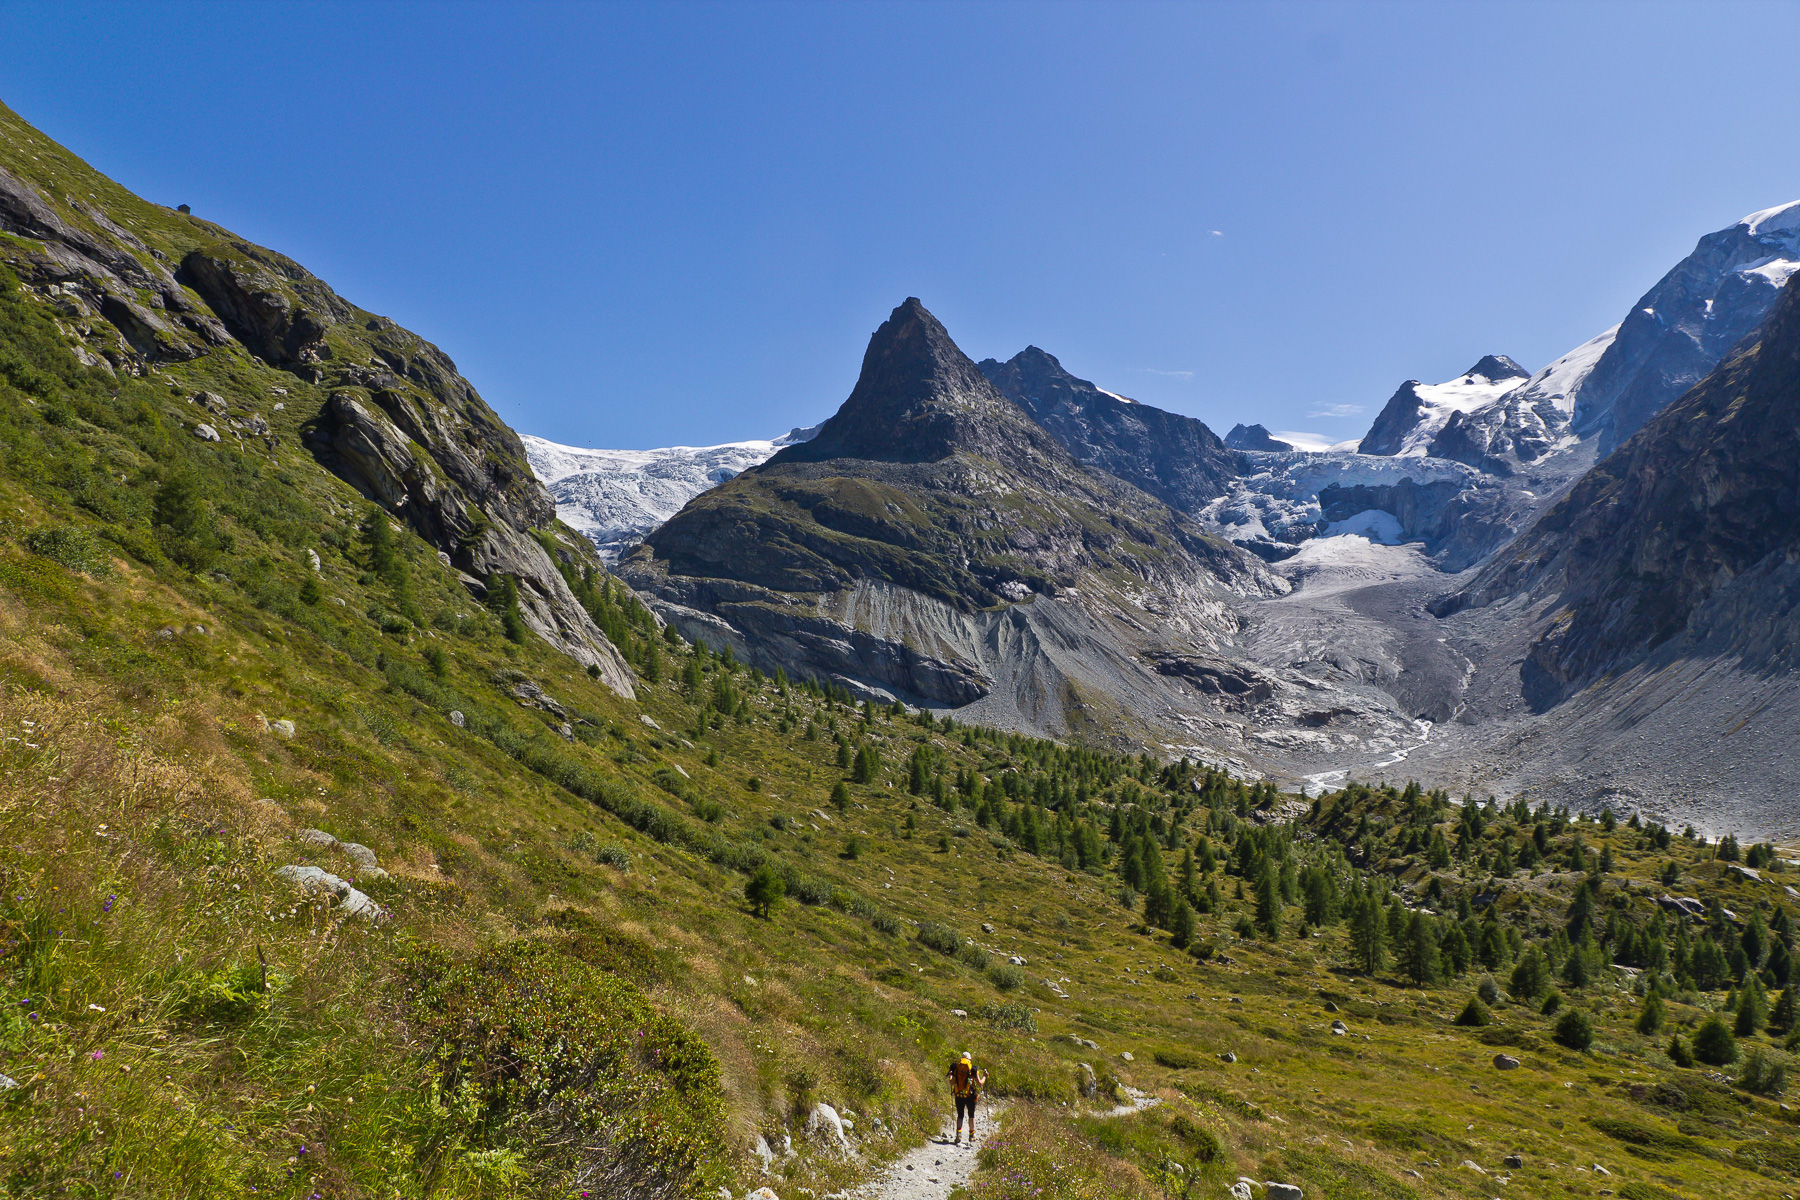 Am Zusammenfluss von Glacier de Ferpècle und Glacier du Mont Miné.